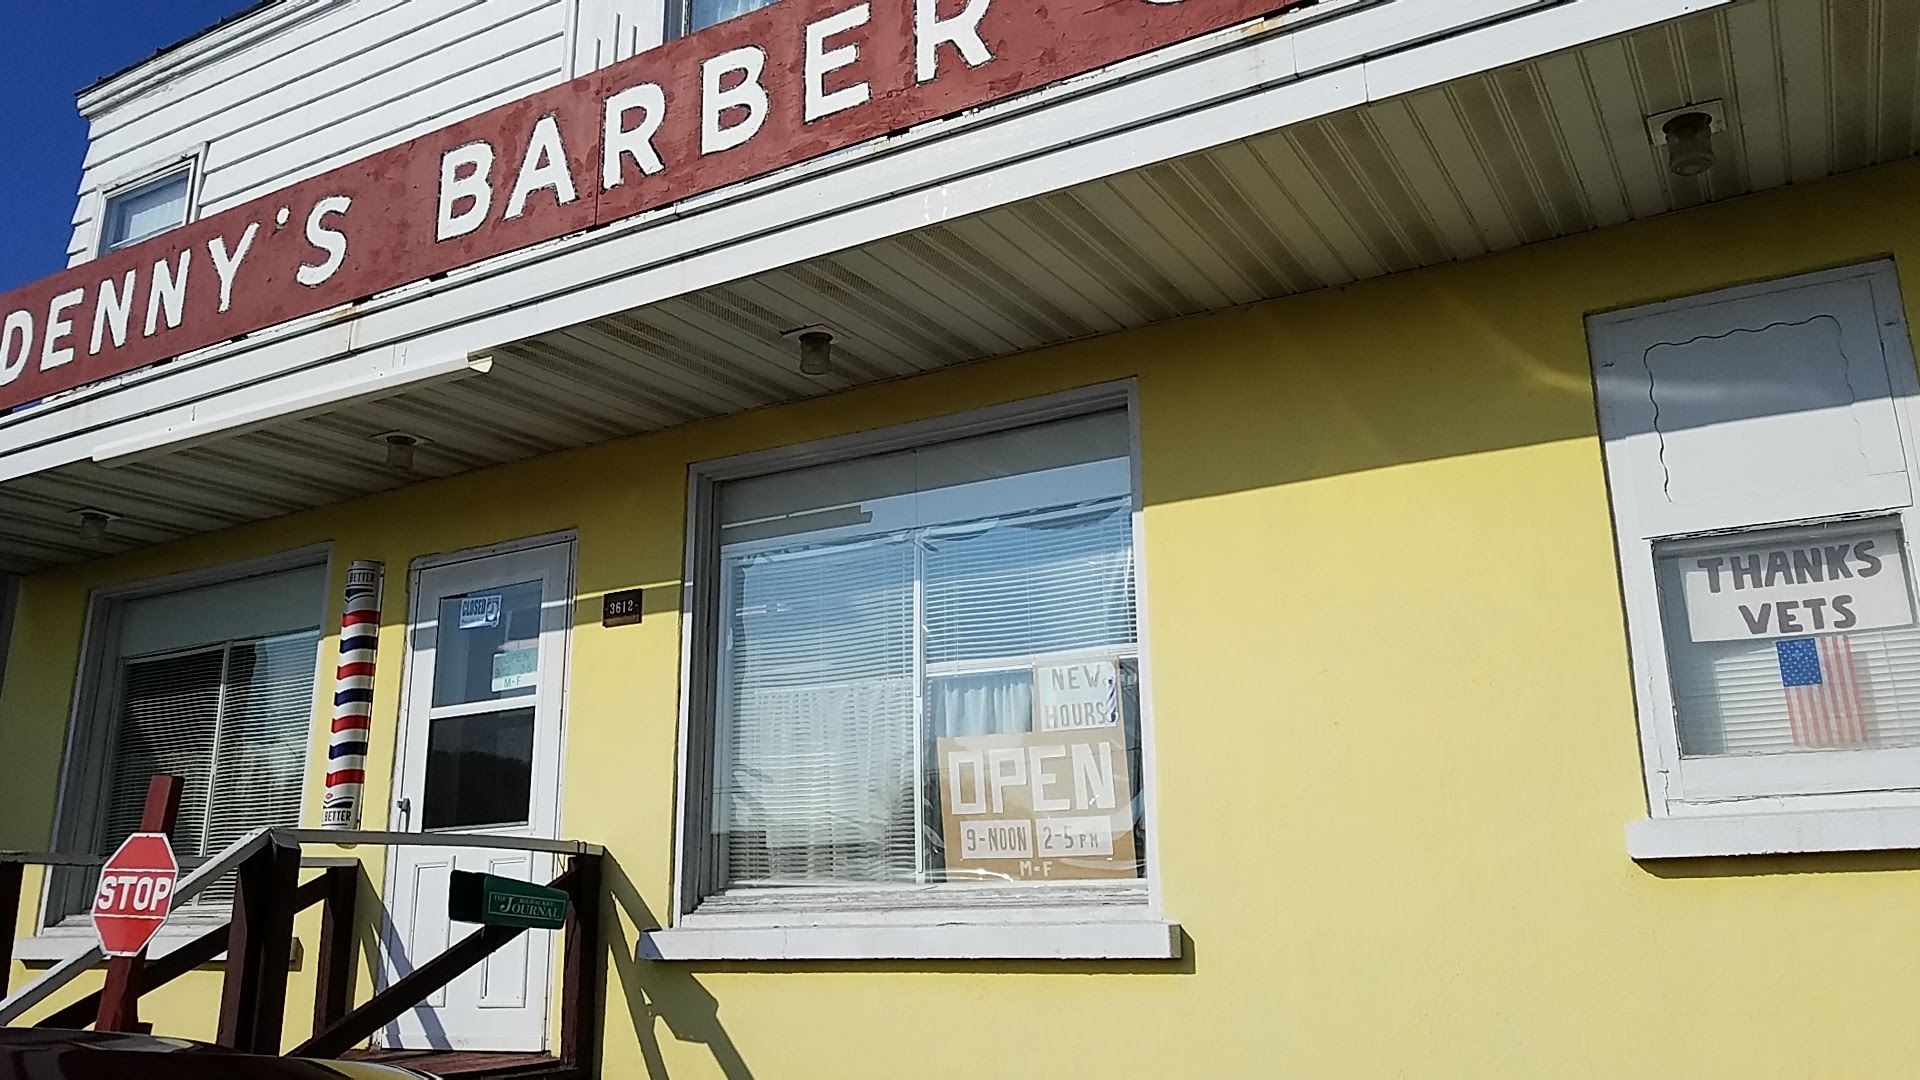 Denny's Barber Shop